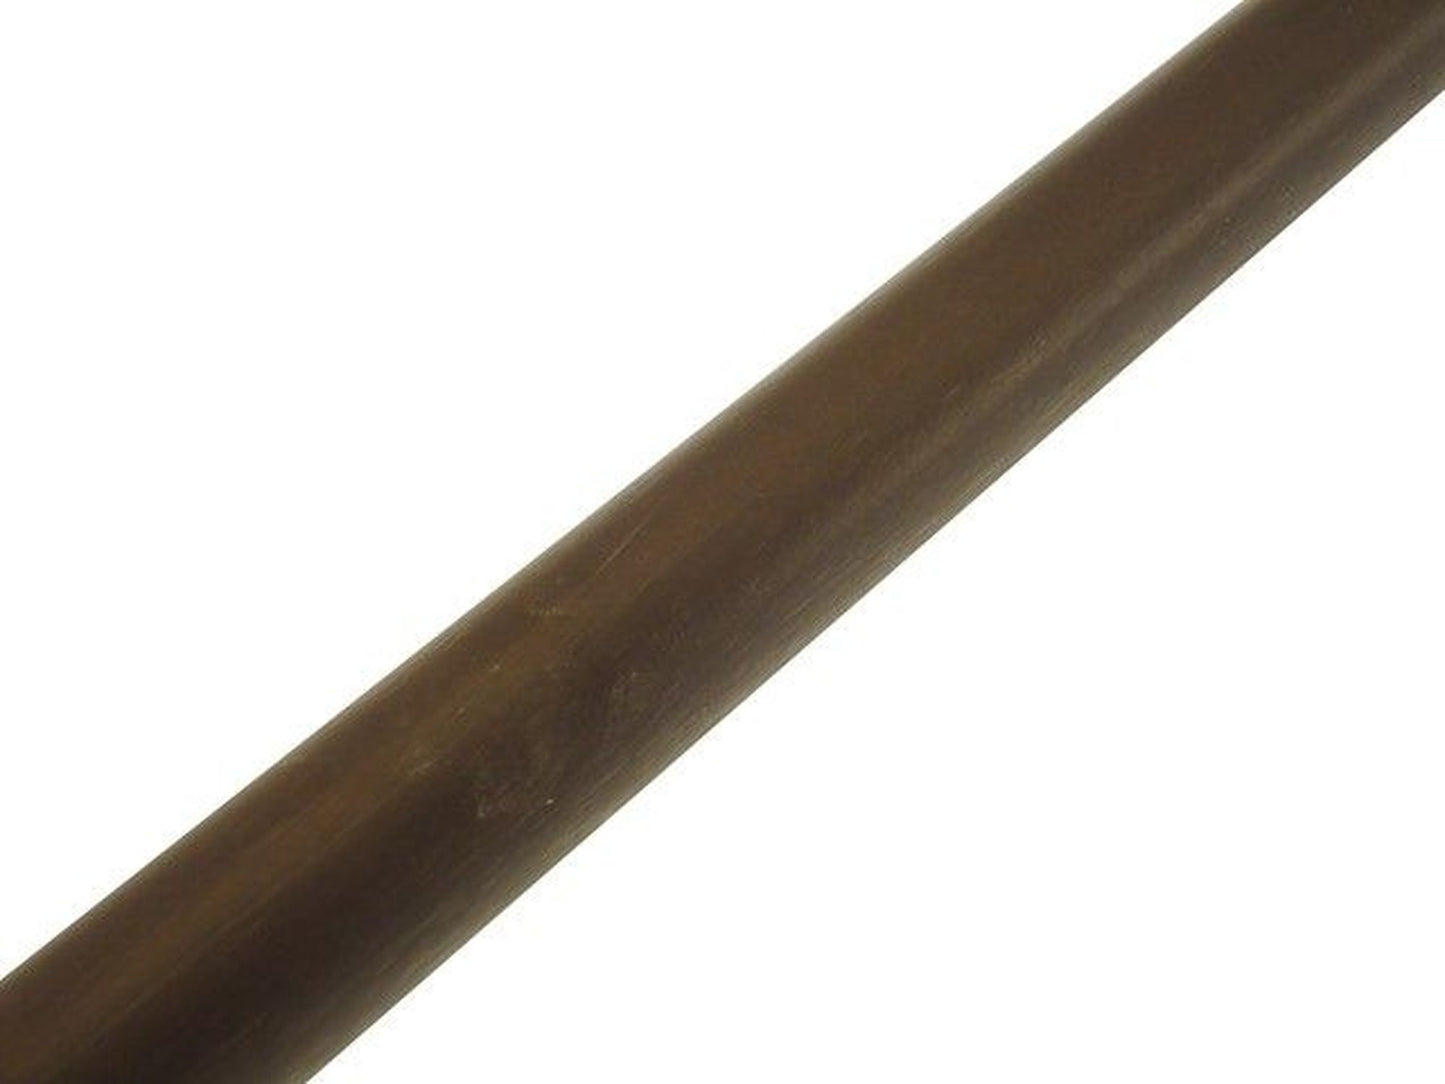 Bastone in legno per tende - Ø28mm x 160 cm